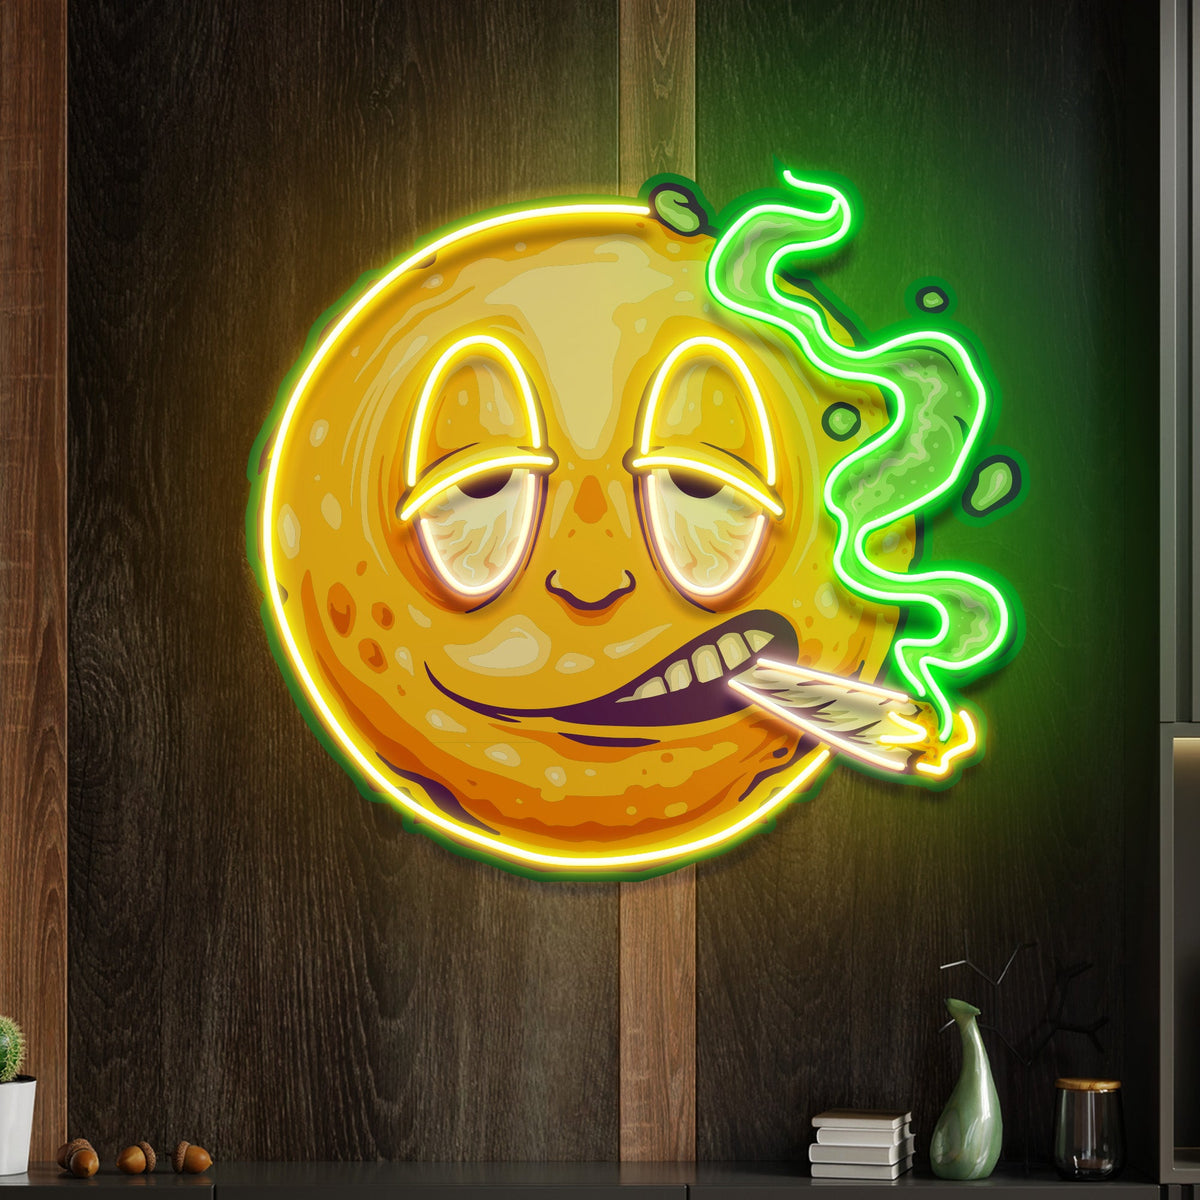 Custom Name Funny Smiley Face Artwork Led Neon Sign Light